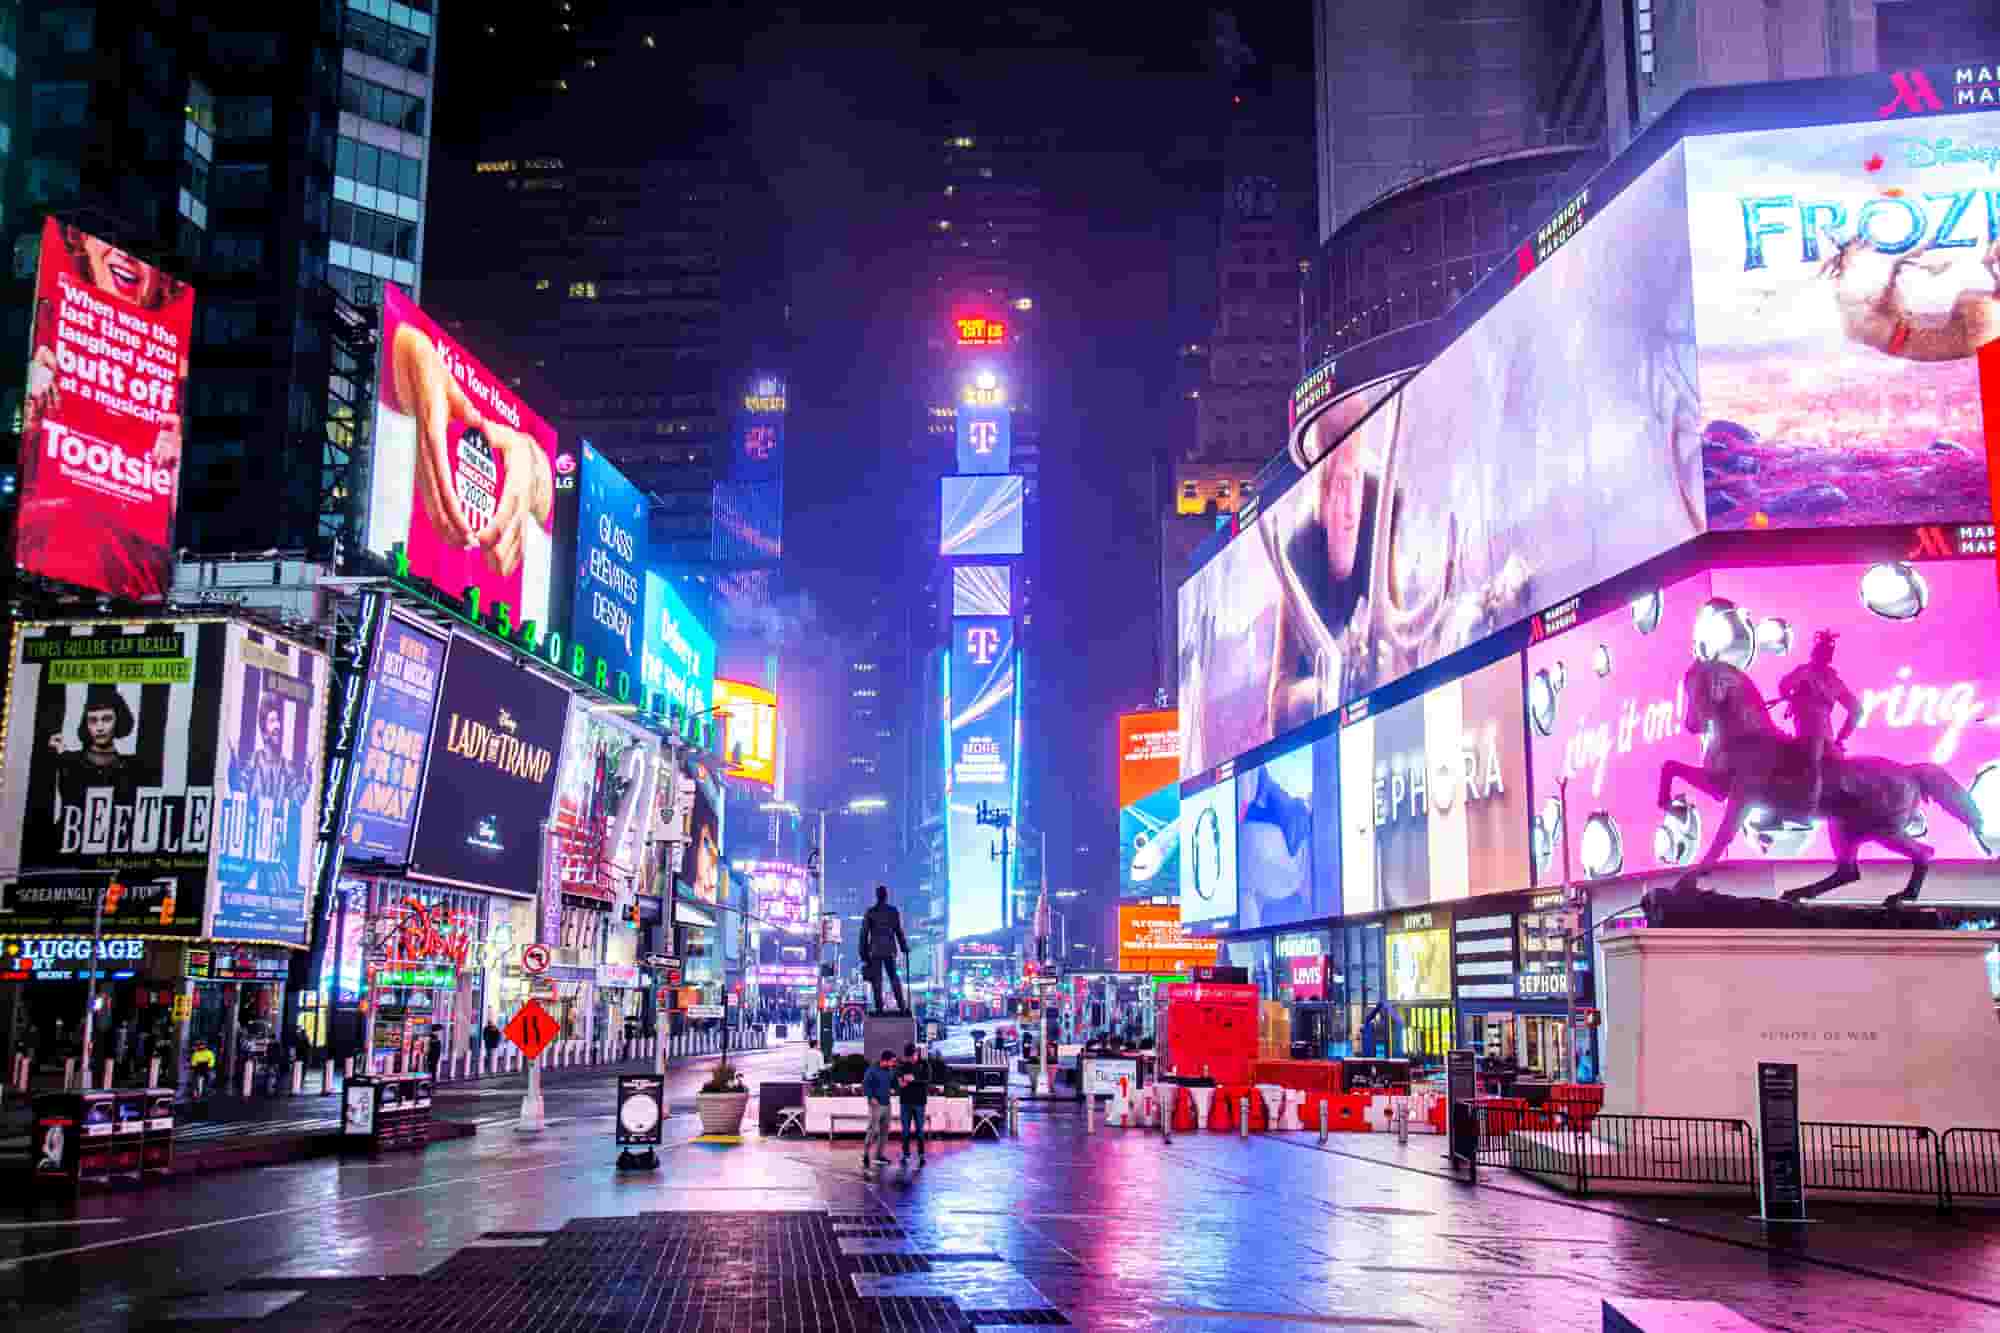 Vô số những biển quảng cáo được thắp sáng hàng ngày tại Times Square